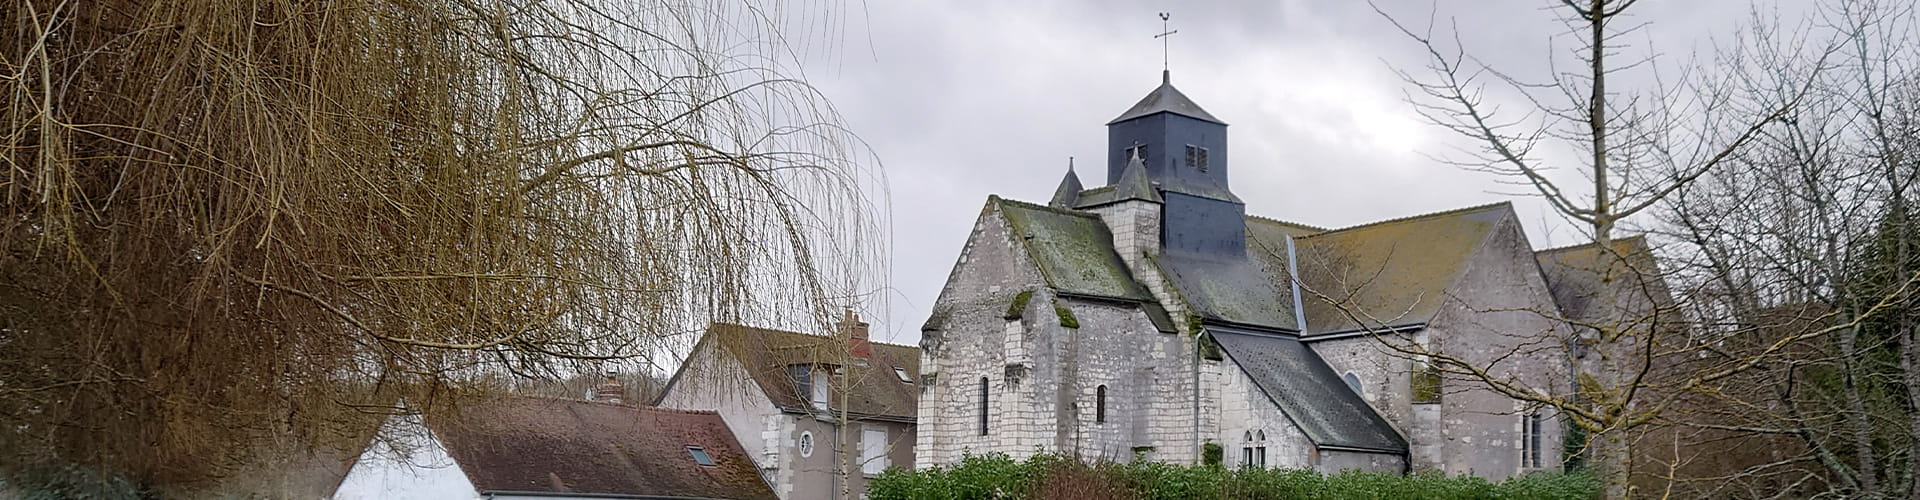 Eglise Sainte-Lucie Luzillé